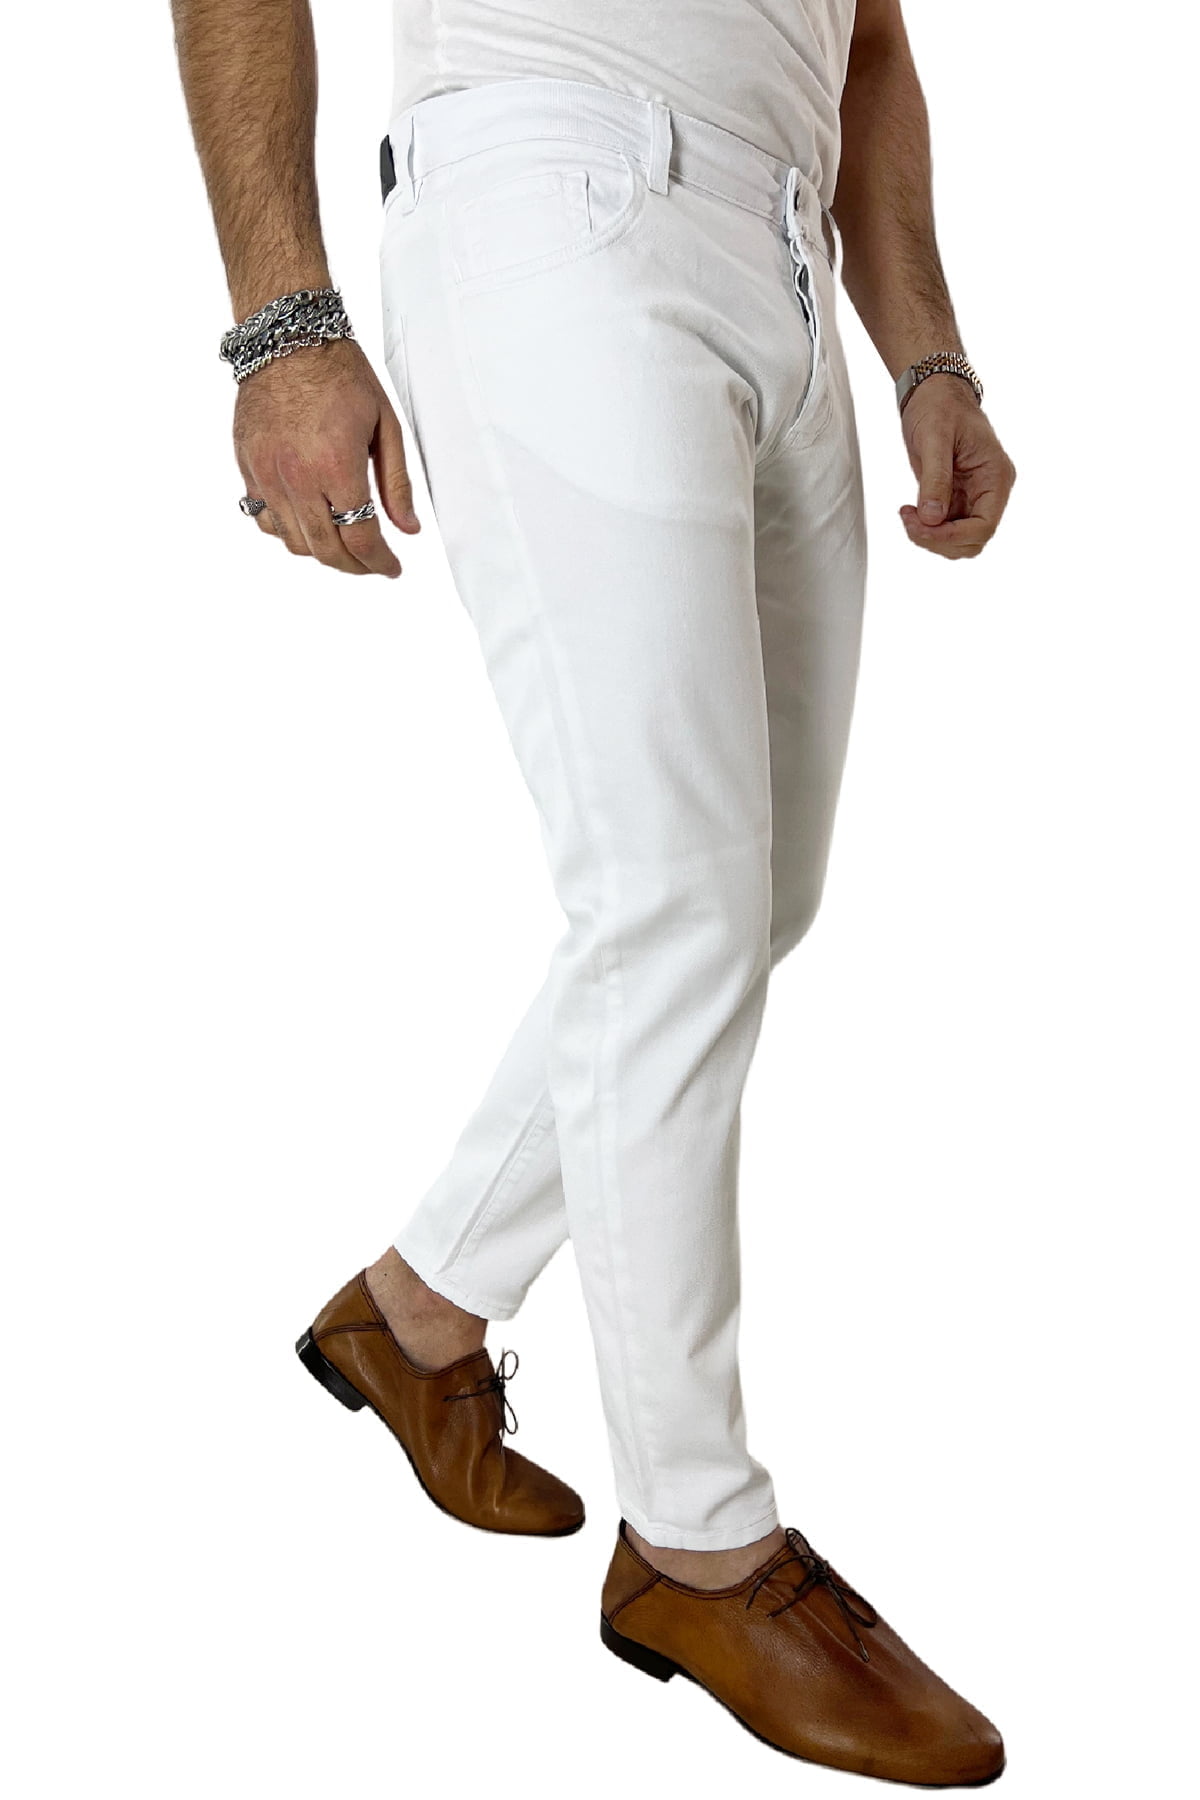 Jeans uomo bianco tinta unita modello 5 tasche slim fit estivo made in italy